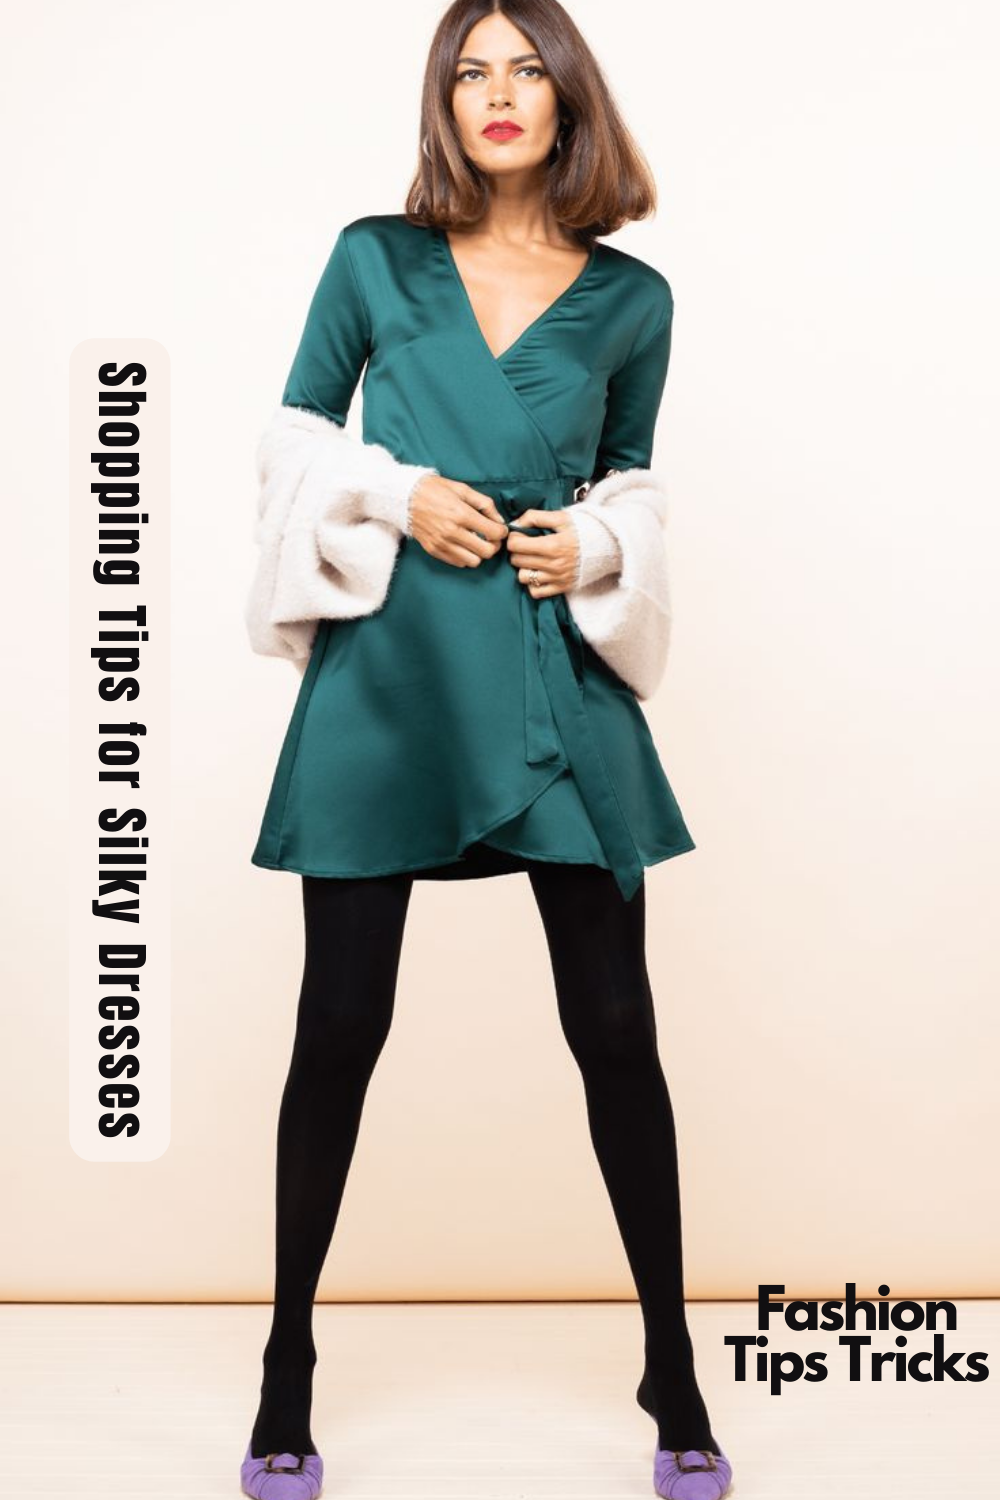 Shopping Tips for Silky Dresses